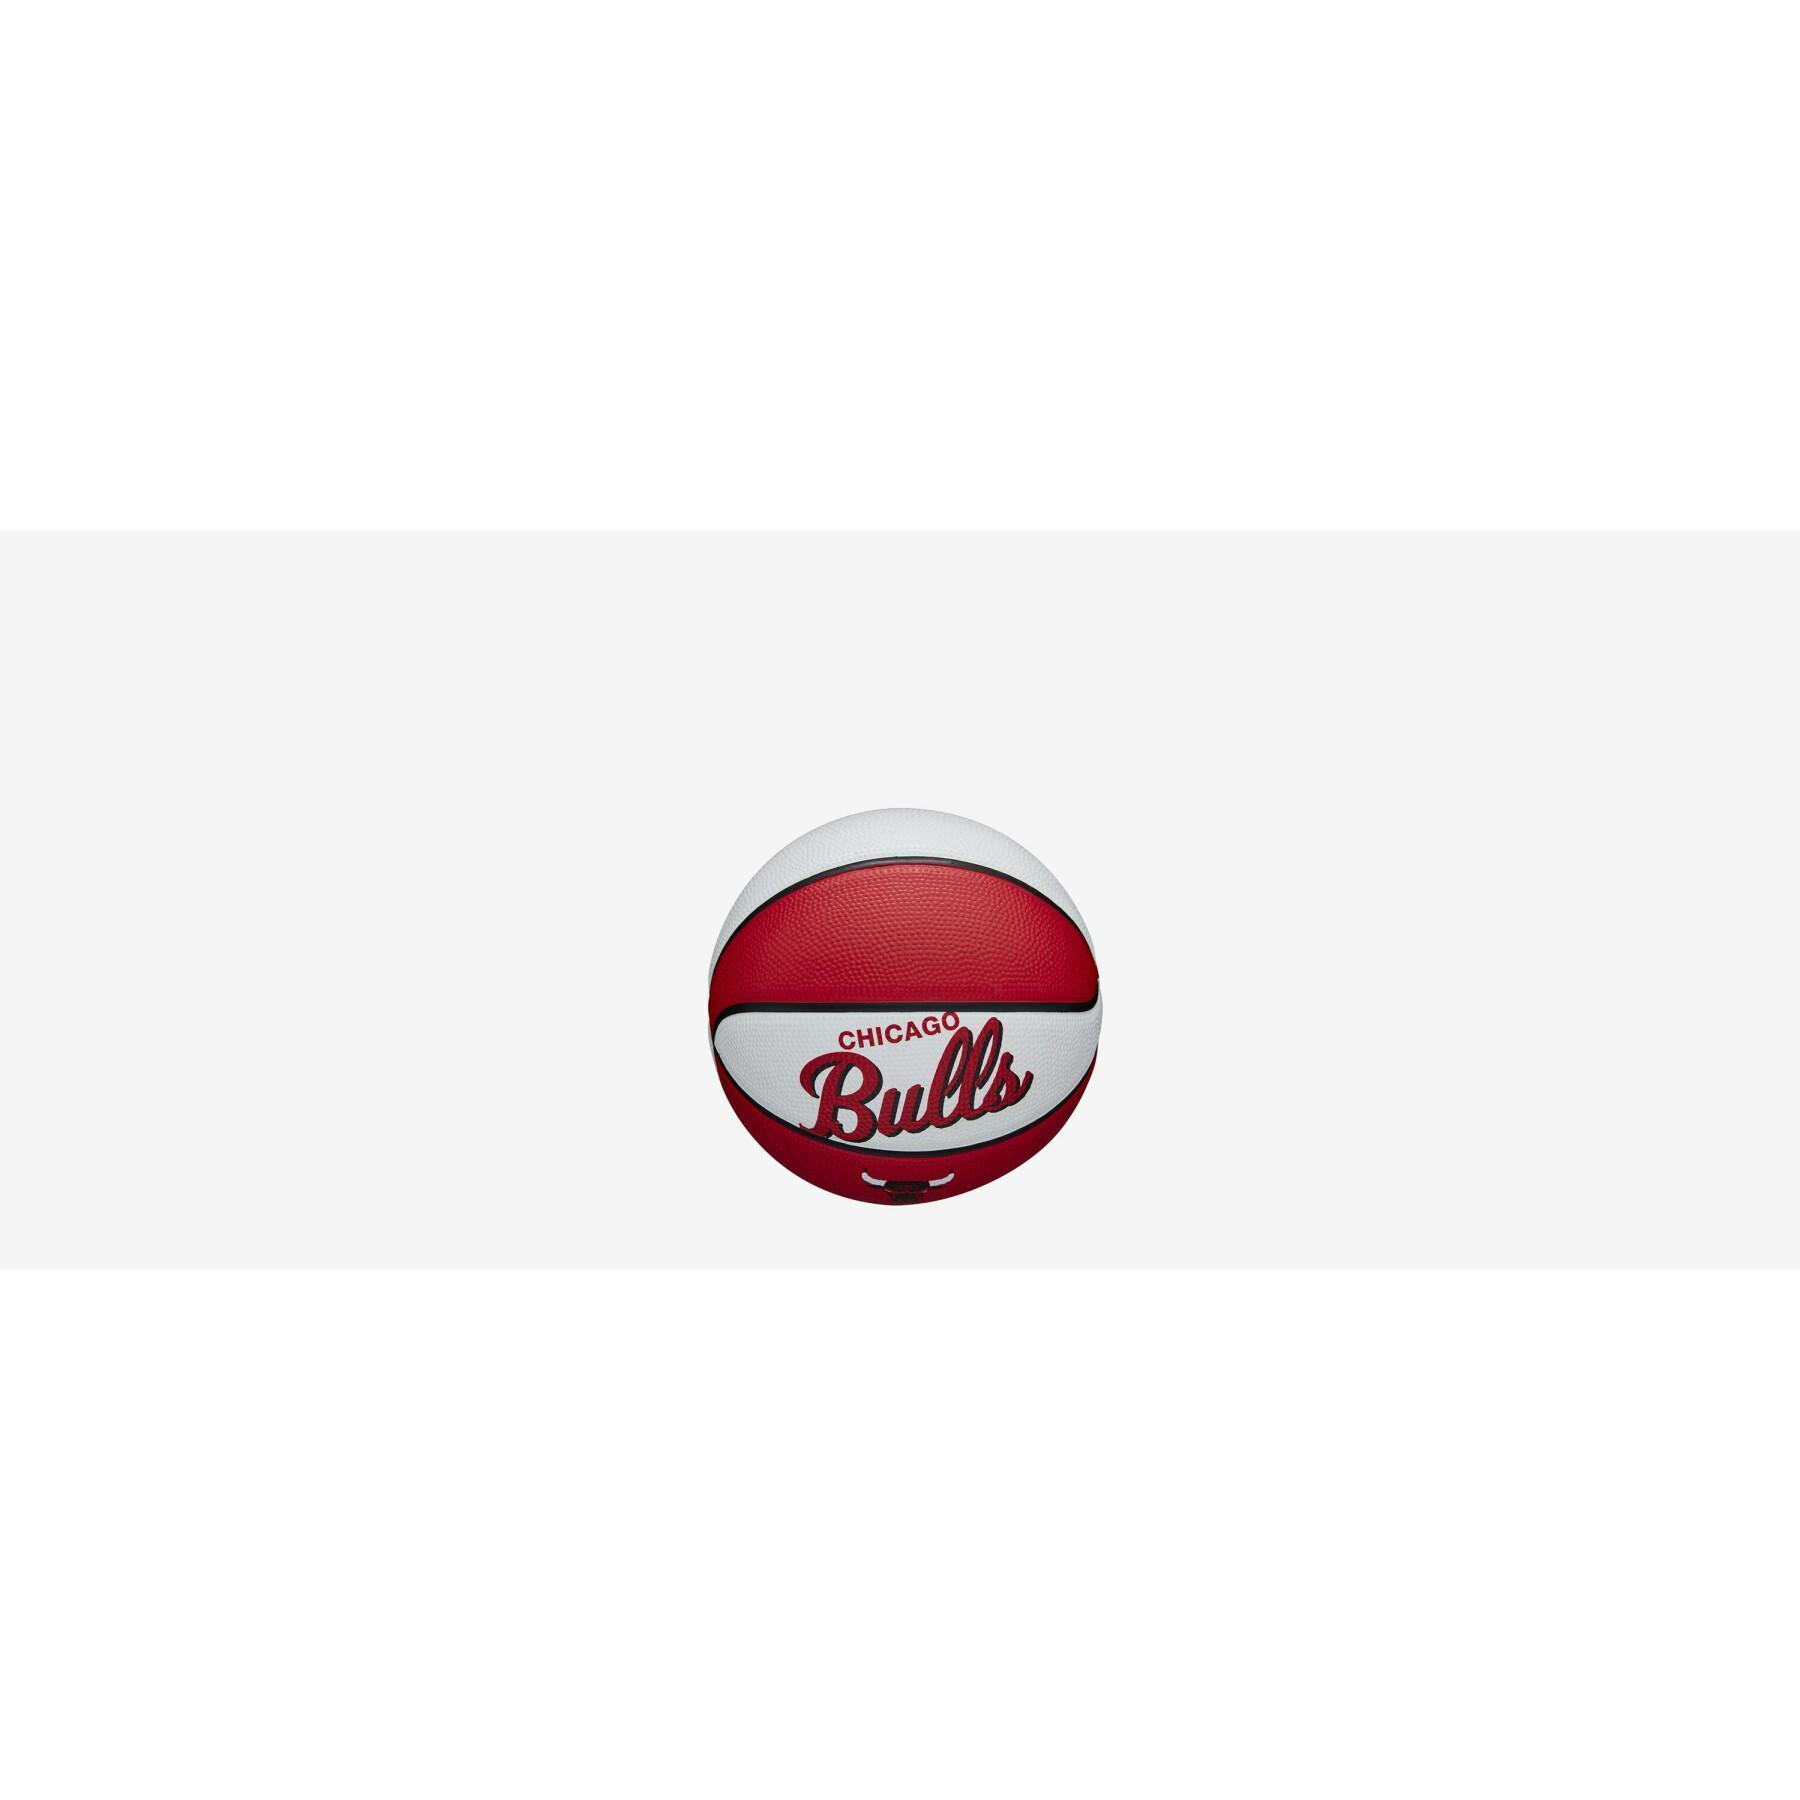 Mini ballon Chicago Bulls Nba Team Retro 2021/22